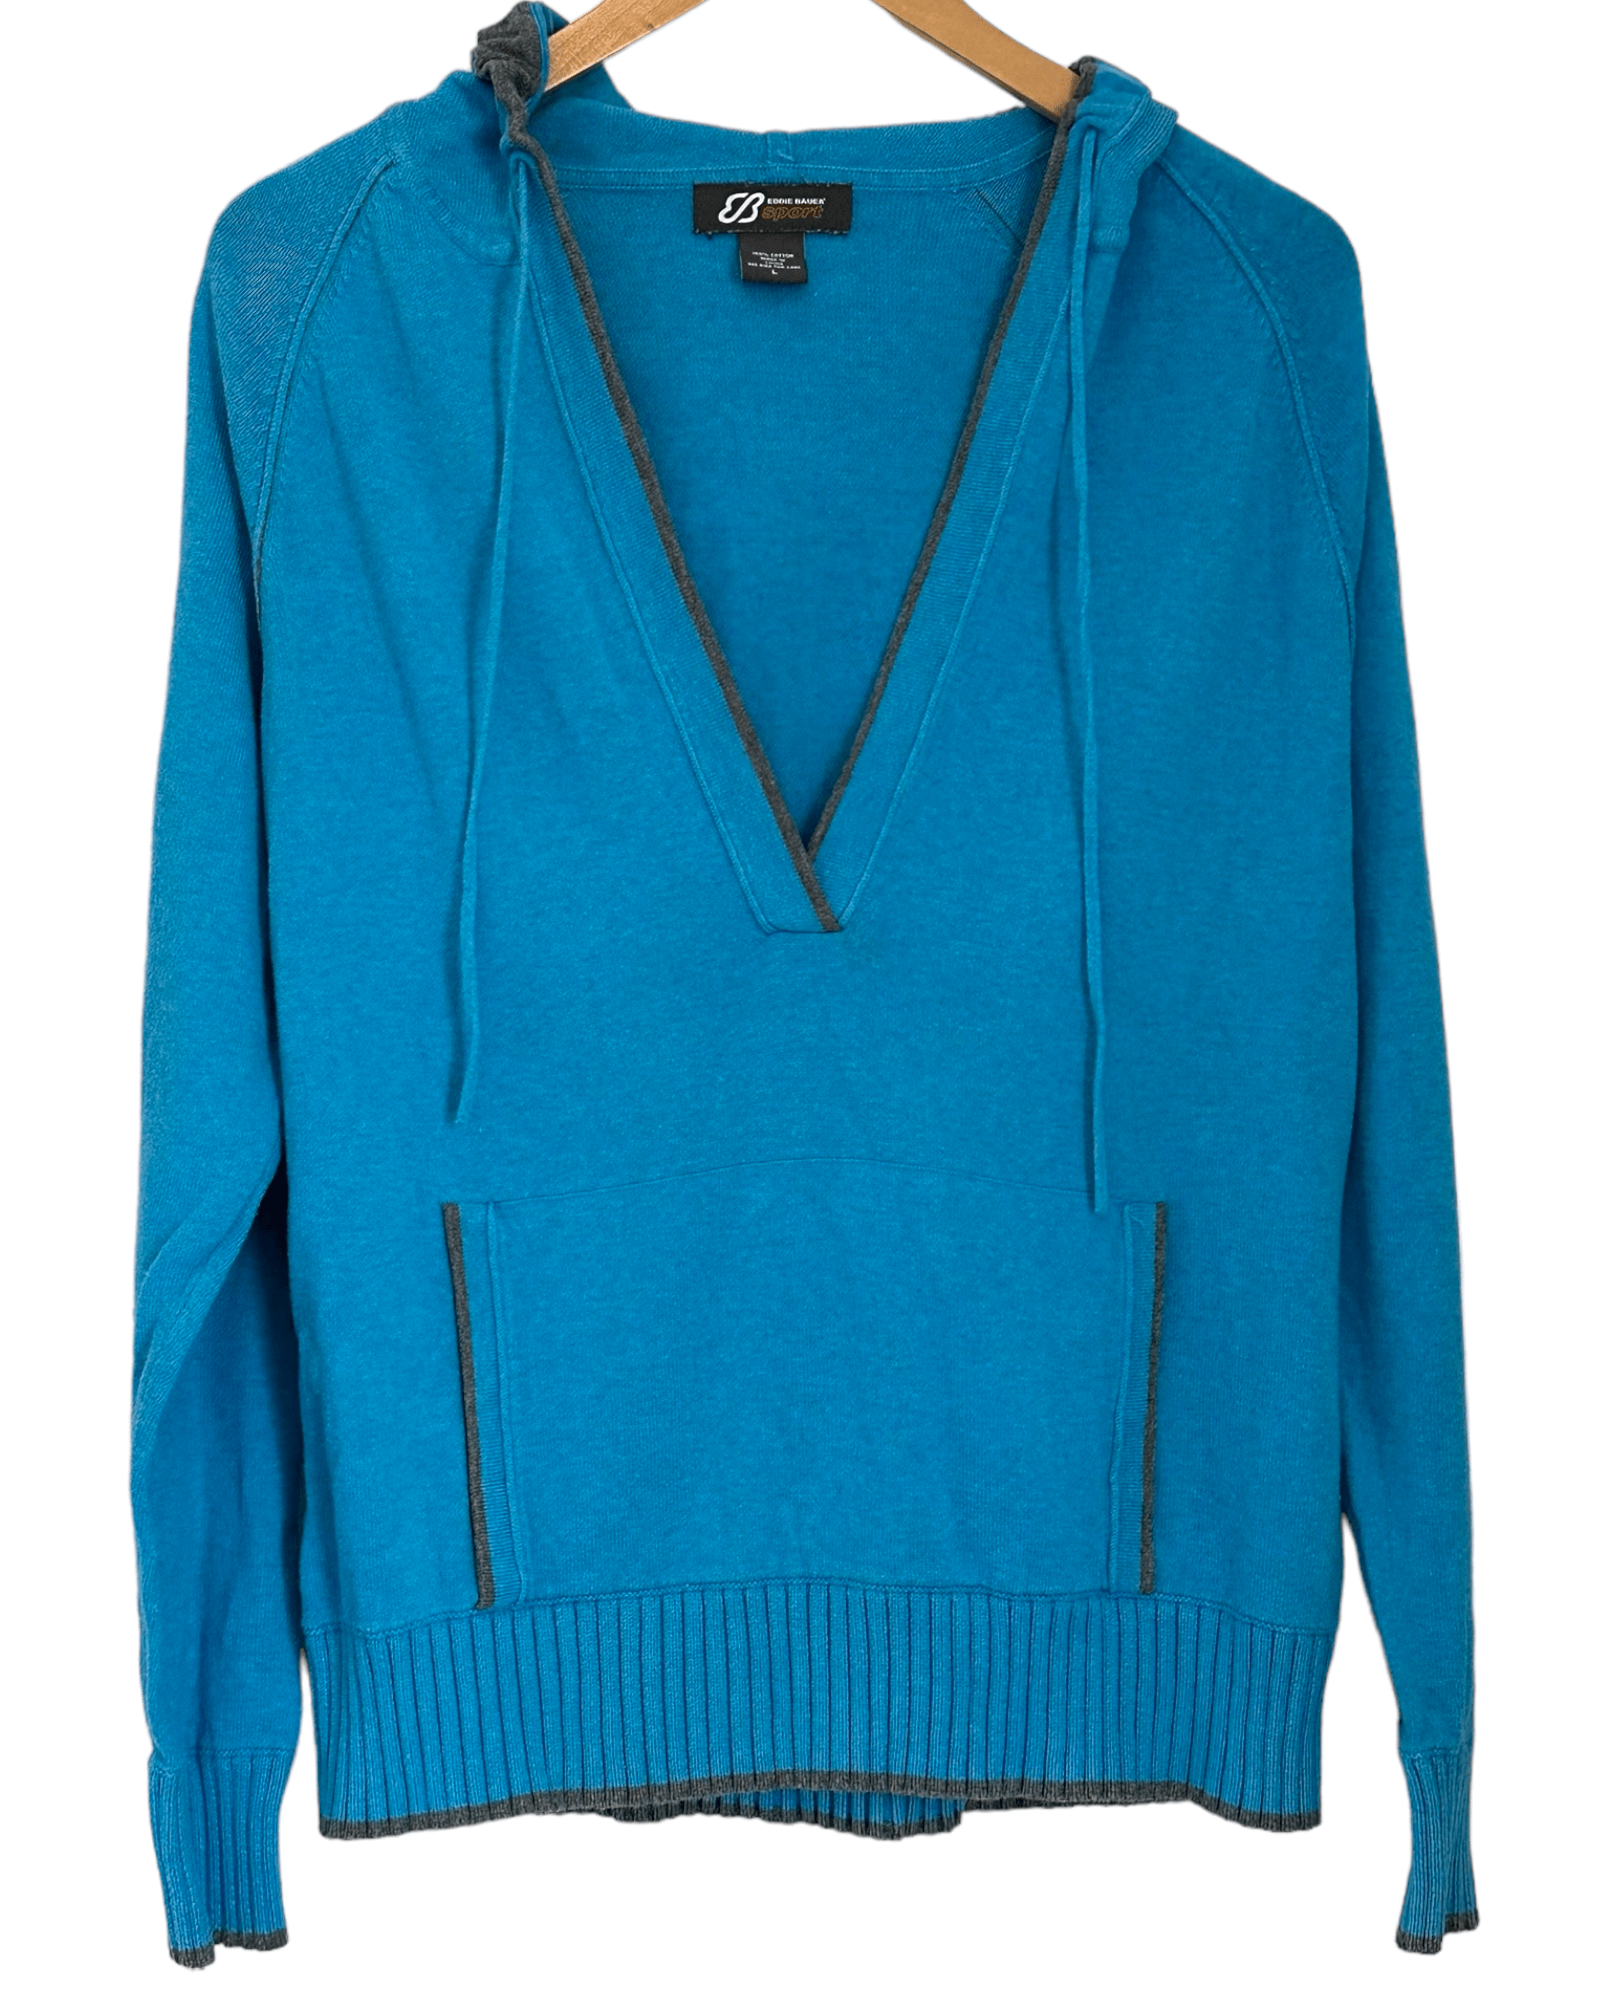 Light Summer EDDIE BAUER SPORT blue split-neck hooded sweater